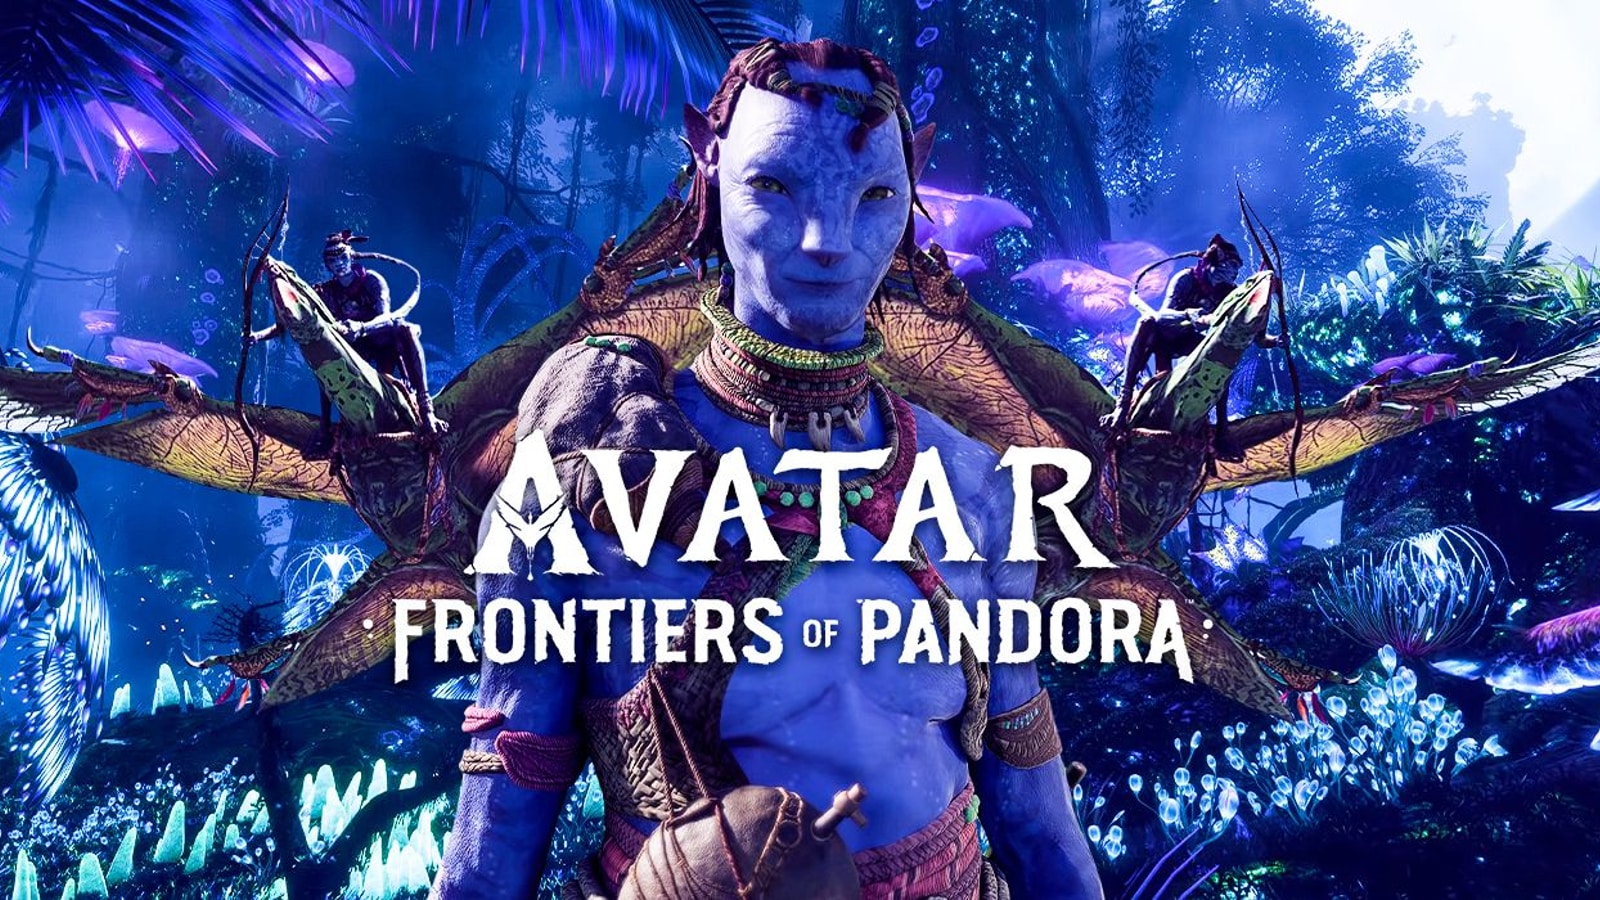 Những cập nhật mới nhất về Avatar Frontiers of Pandora năm 2024 sẽ mang đến cho người chơi những trải nghiệm mới lạ và đầy thú vị. Với một loạt các chức năng cải tiến và tính năng mới, đây sẽ là trò chơi đáng chơi nhất đối với những người yêu thích thế giới Avatar.